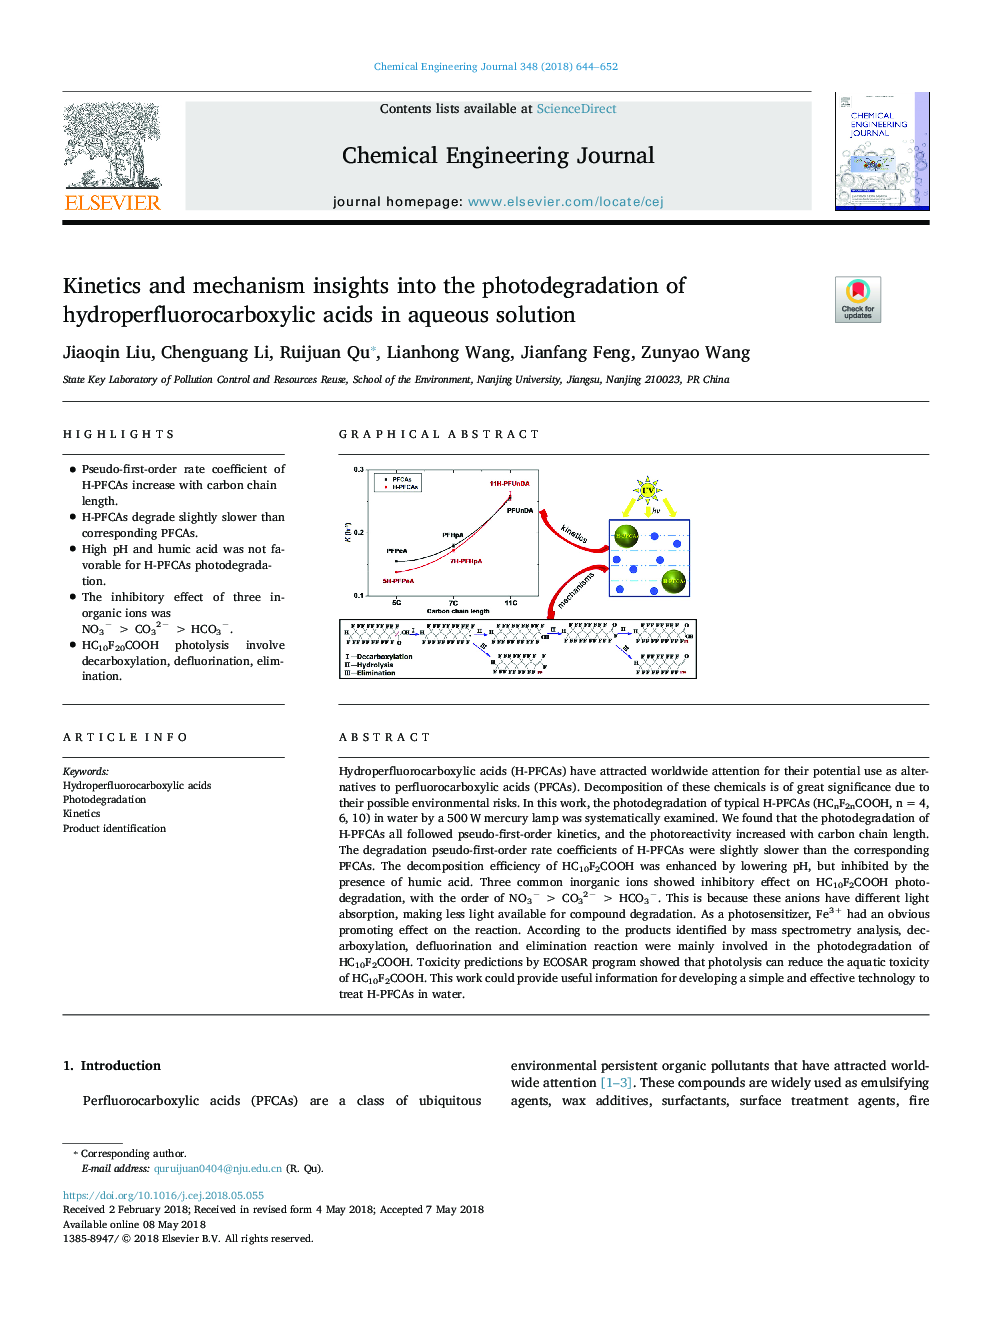 بینش سینتیک و مکانیزم به تجزیه عنصری از اسیدهای هیدروپرفلوکروبوکسیلیک در محلول آبی 